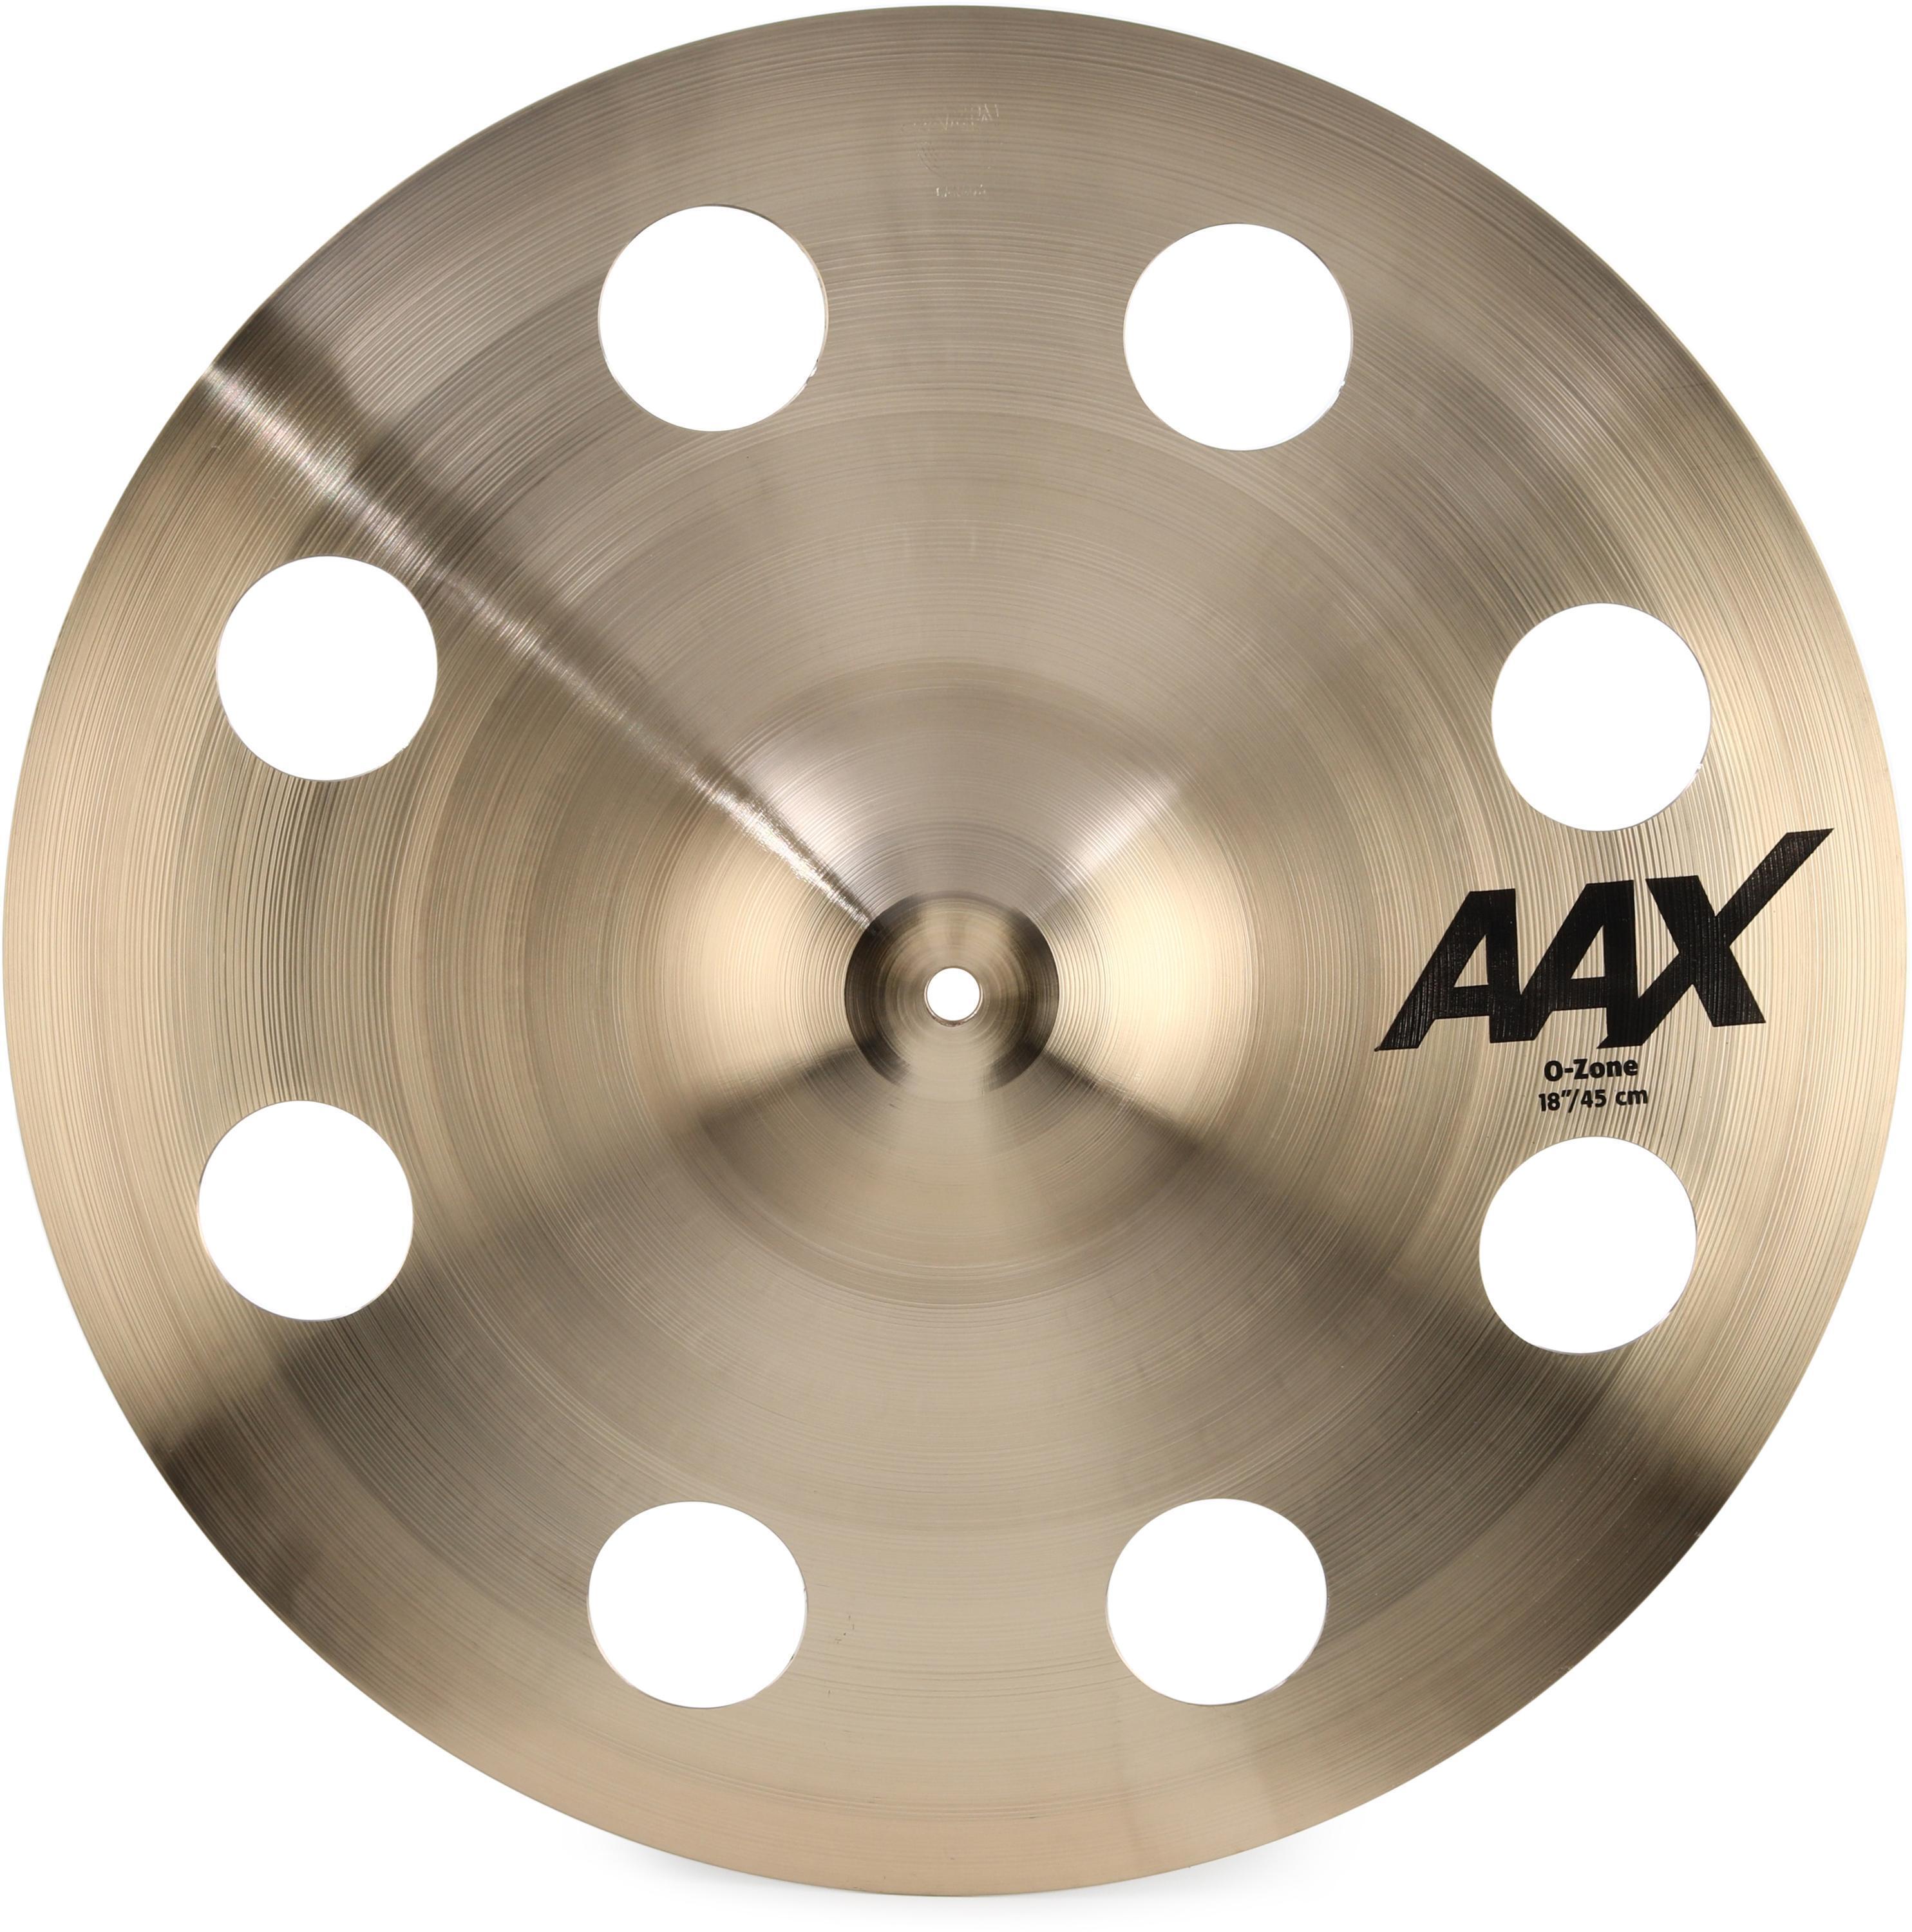 Sabian 18 inch AAX O-Zone Crash Cymbal | Sweetwater